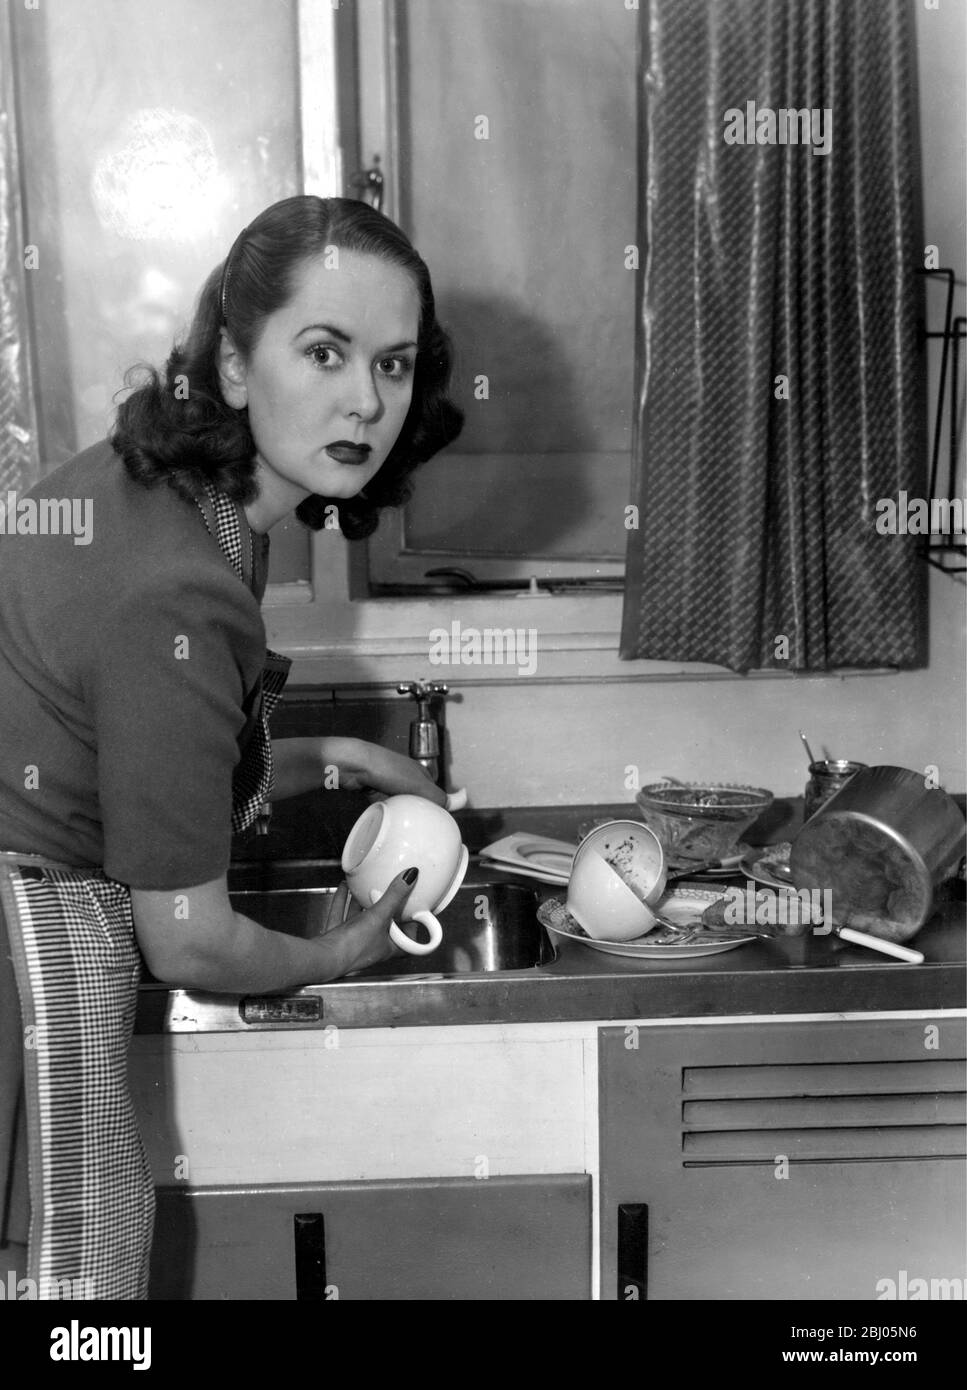 Hausfrau, die nicht glücklich, das Abwaschen zu tun. Stockfoto